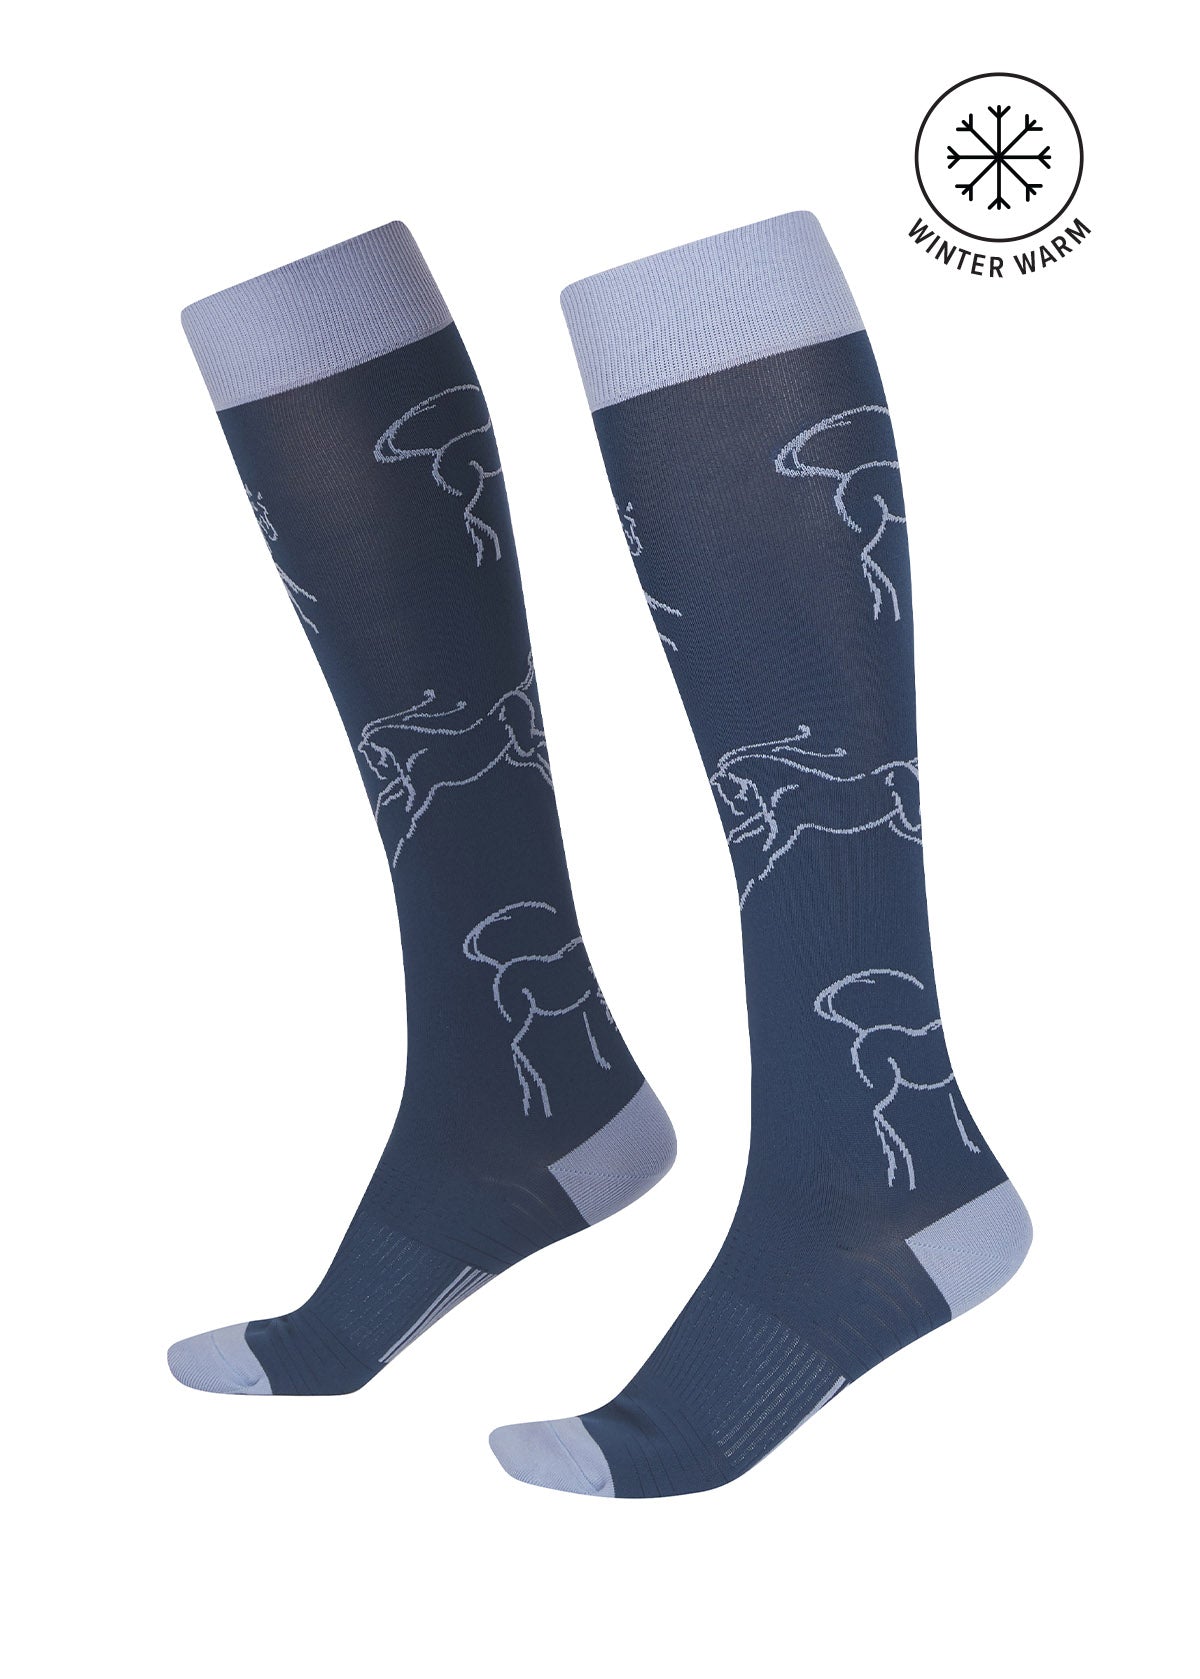 Kerrits Winter Whinnies Wool Socks